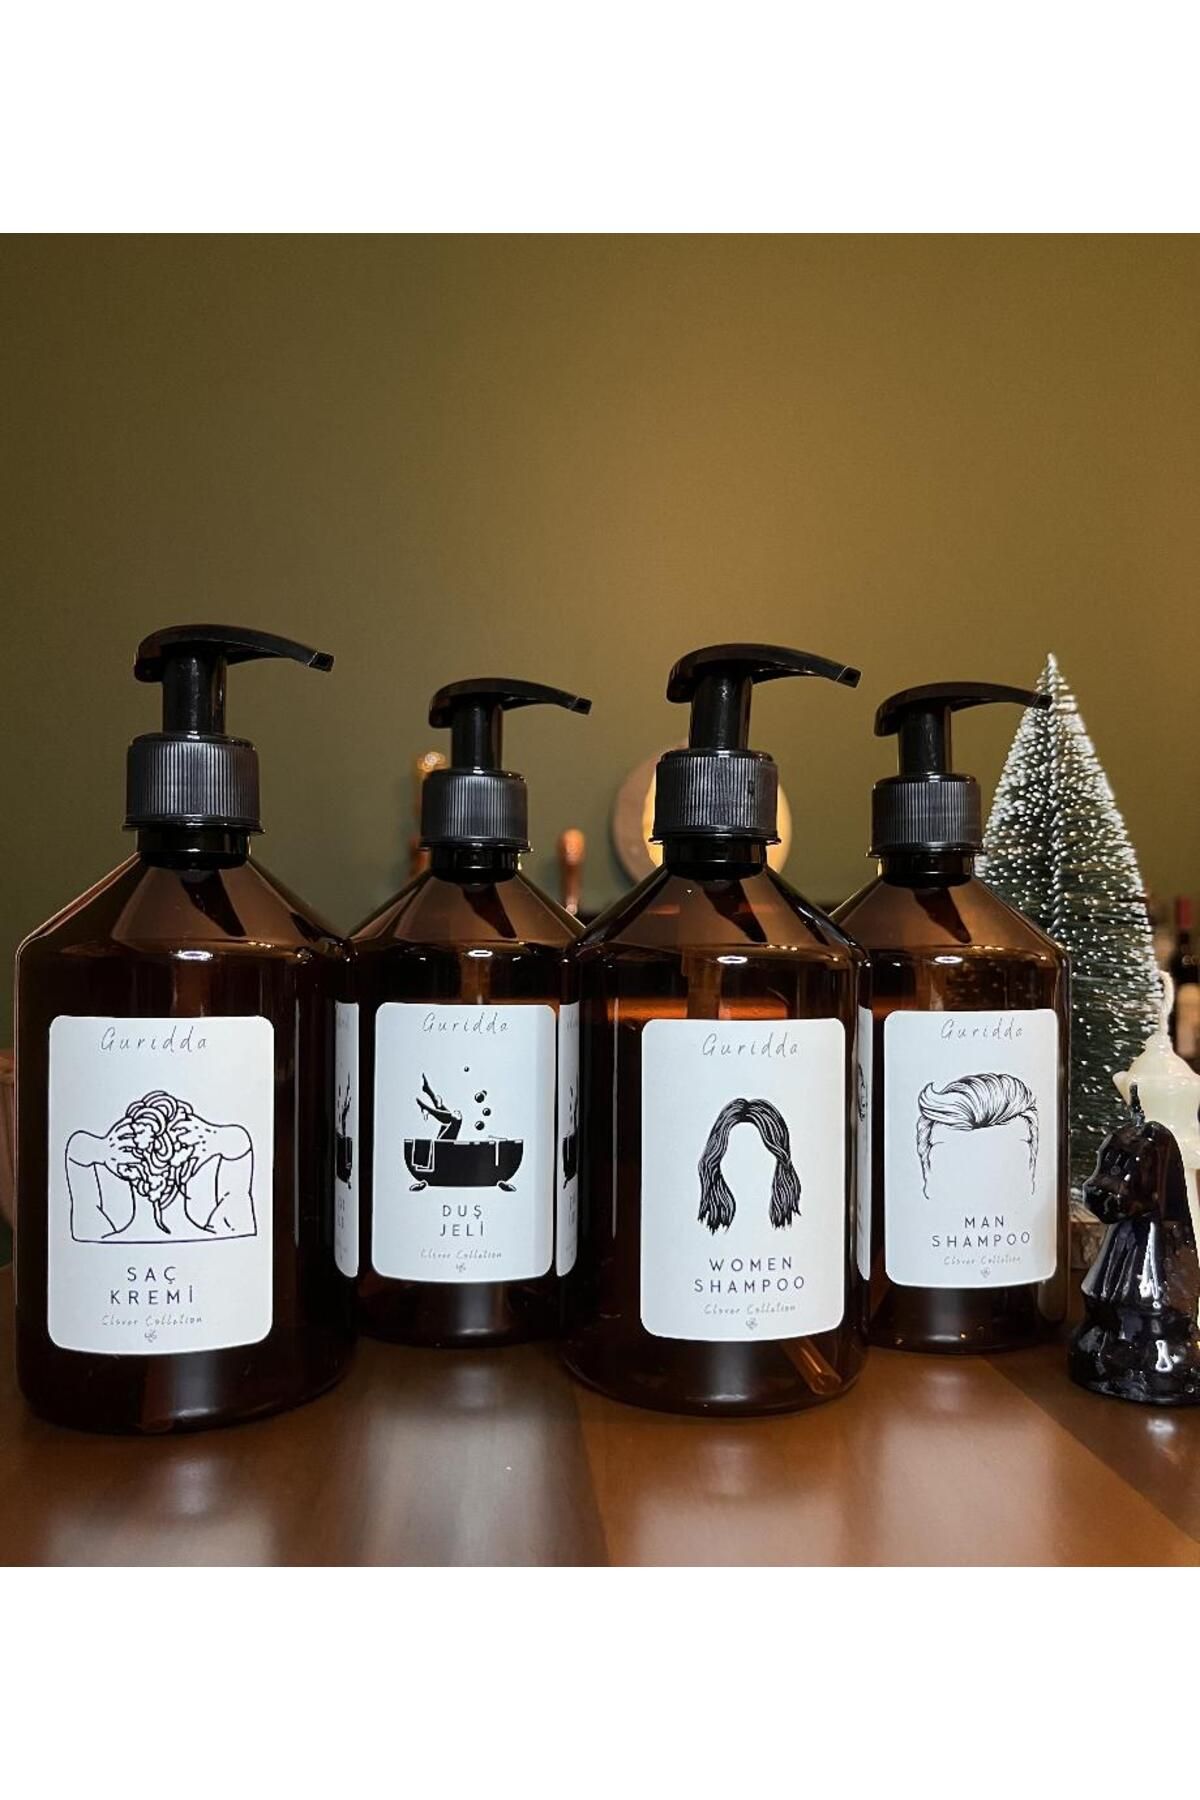 Guridda Home Design Erkek Şampuan Kadın Şampuan Duş Jeli Saç Kremi Etiketli Plastik Amber Şişe 500ml